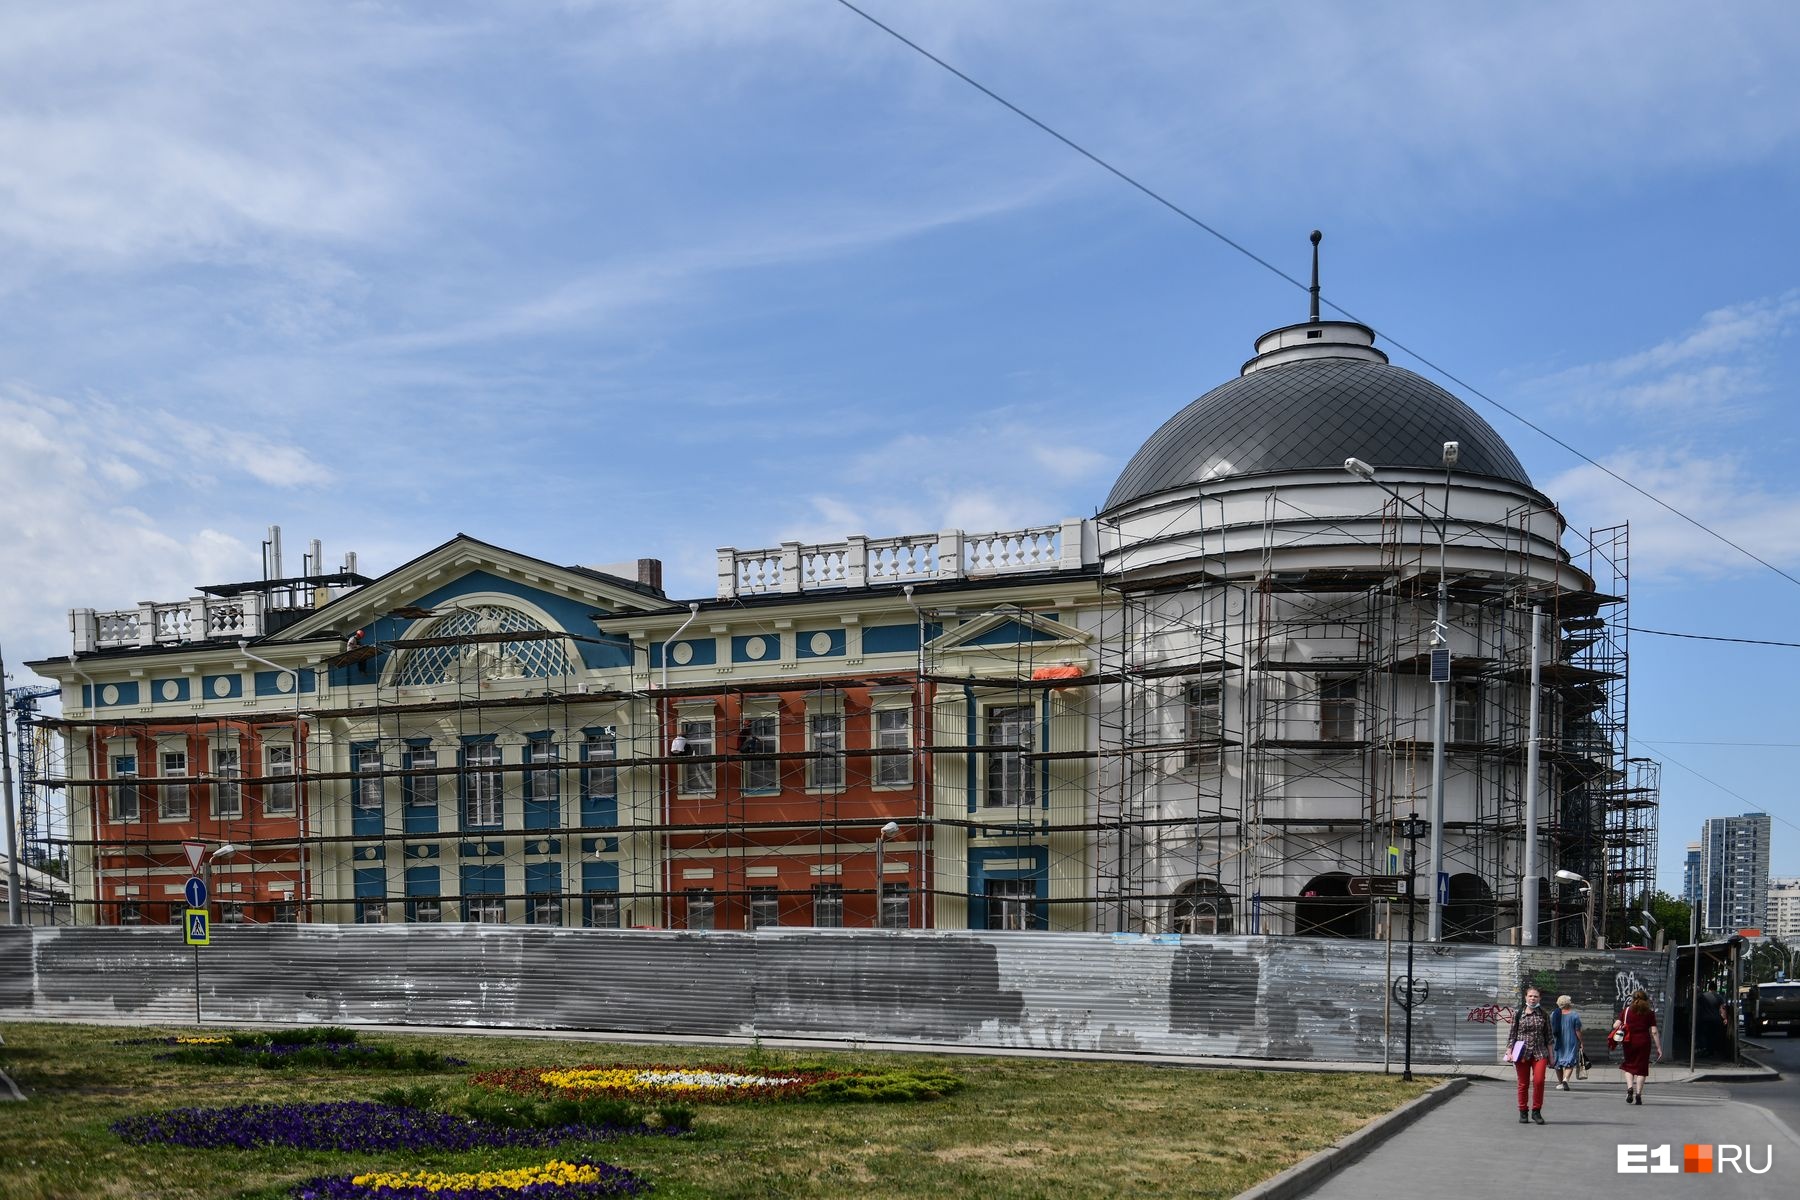 Как устроены легендарные «Сандуны»: первый репортаж со стройки гигантской бани в центре Екатеринбурга